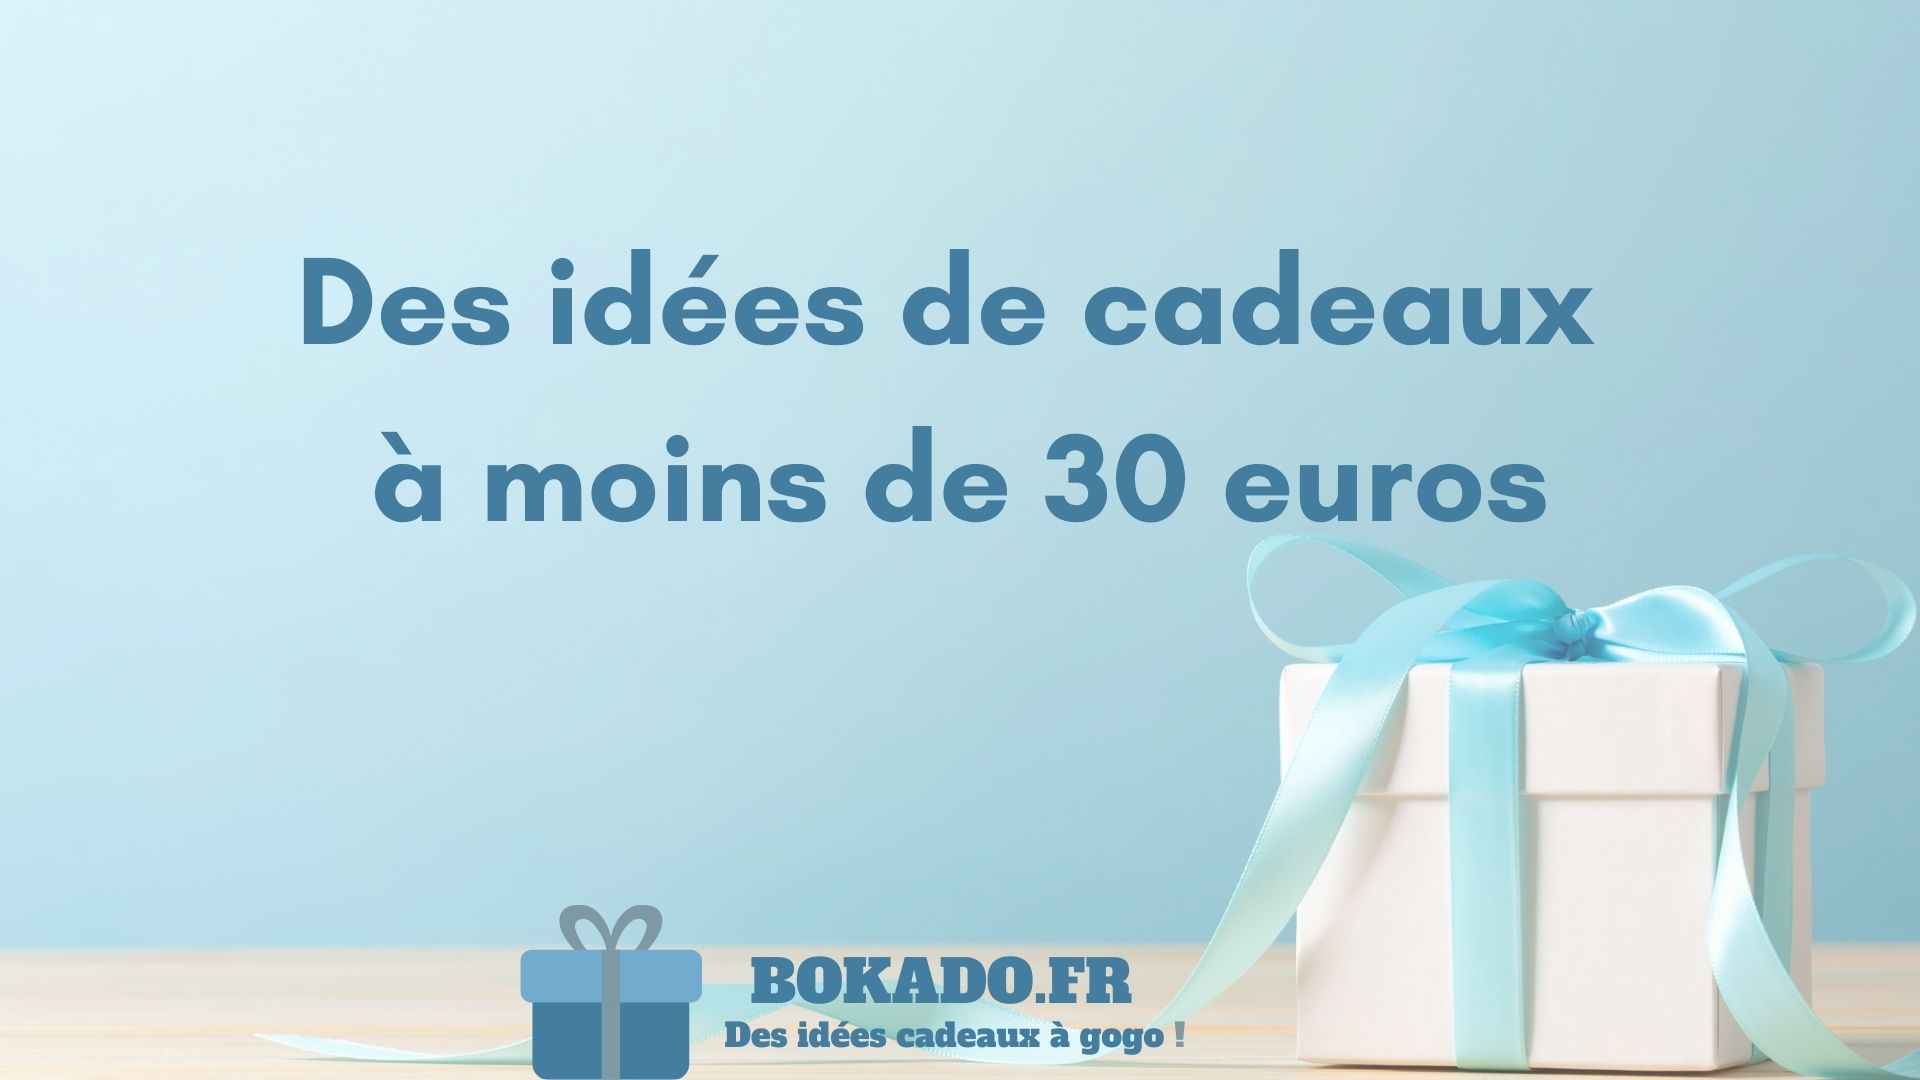 49 idées de cadeaux entre 21 et 30 euros 